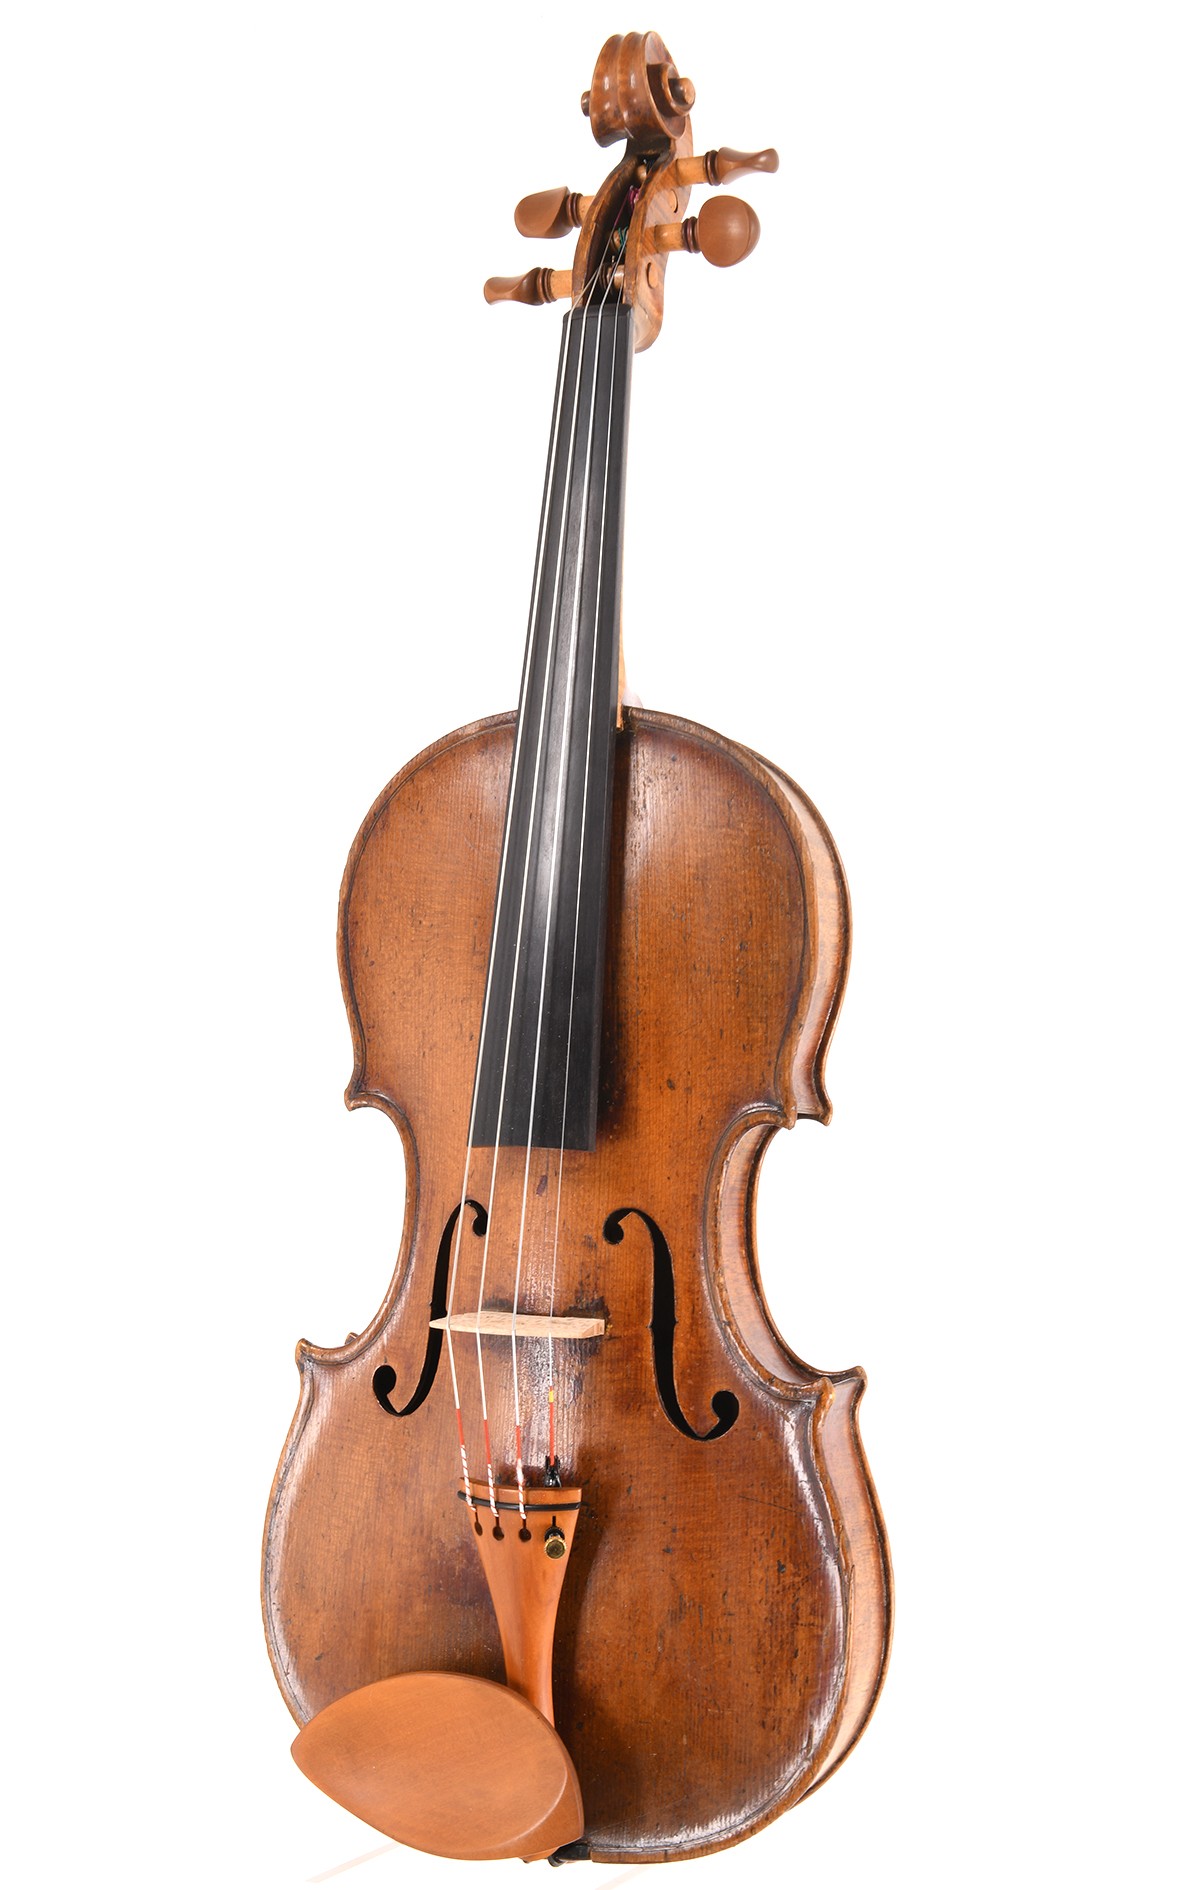 Interessante violino di maestro francese del 1840 circa (certificato J.-J. Rampal)